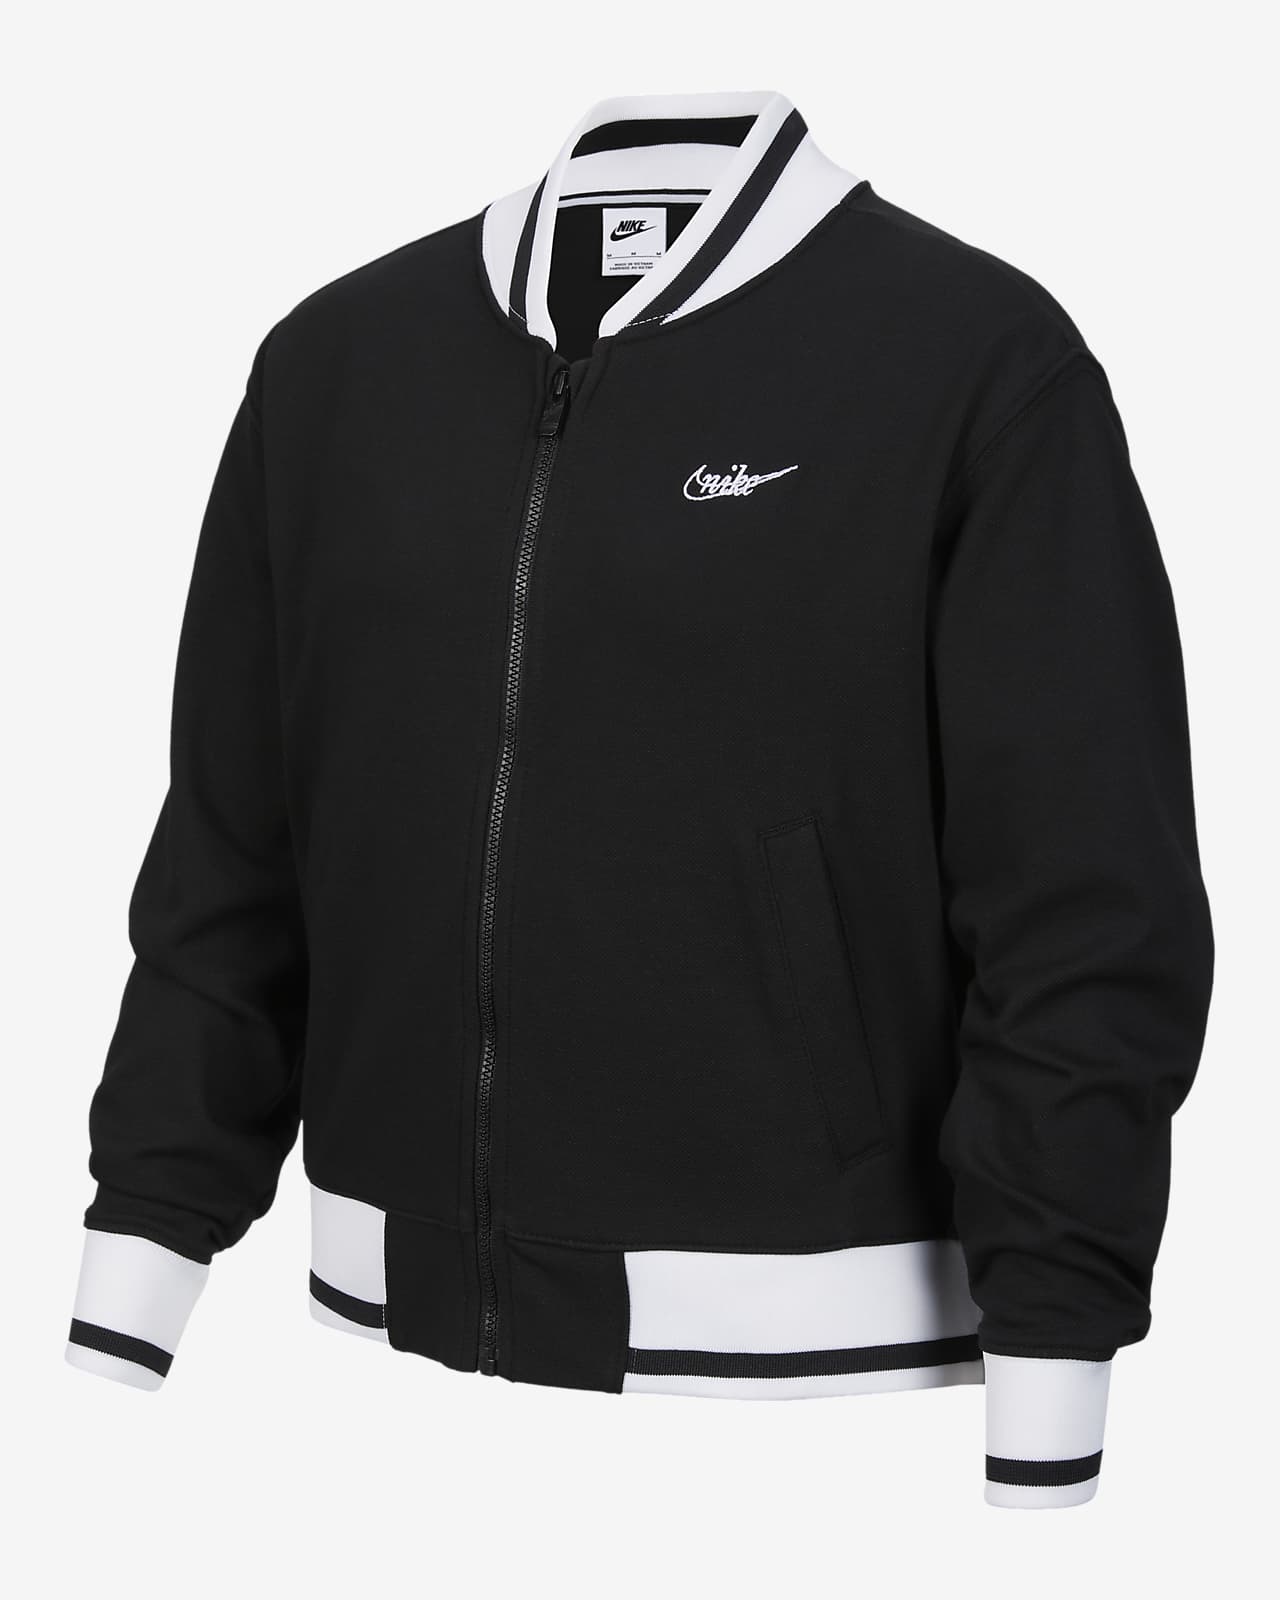 Nike Sportswear Jacke für Mädchen